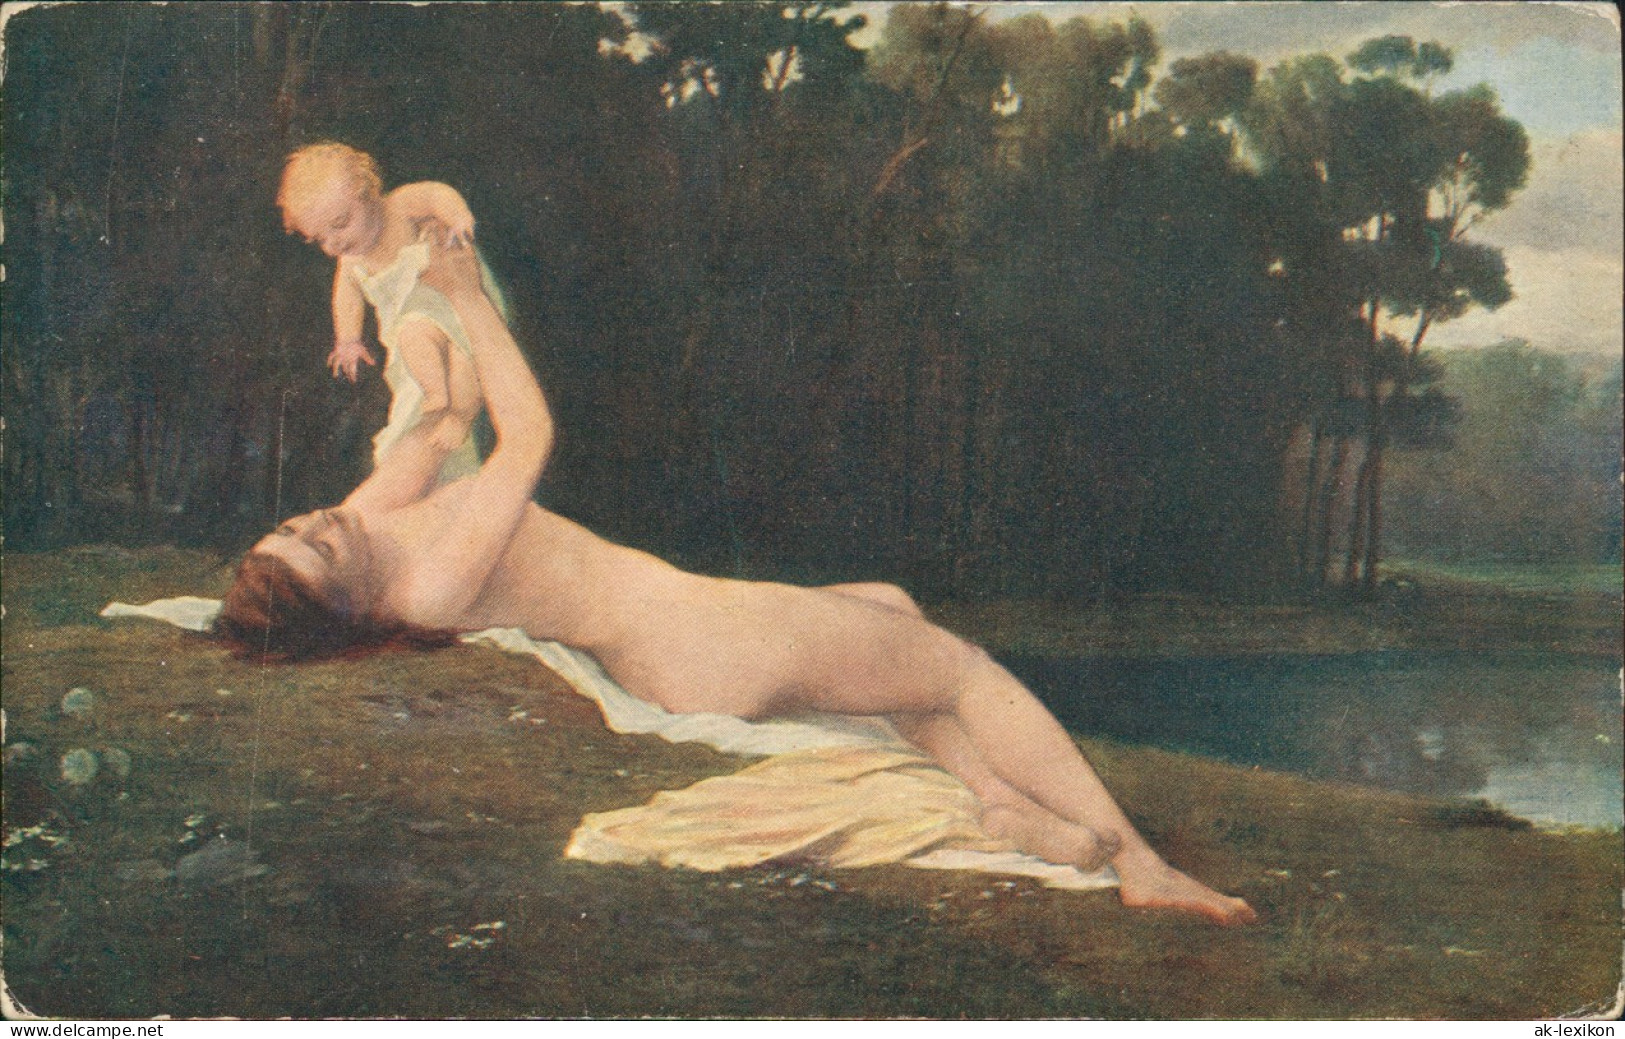 Künstlerkarte: Gemälde ED. LEBIEDZKY. Nach Dem Bade. Schöne Nackte Frau 1913 - Peintures & Tableaux